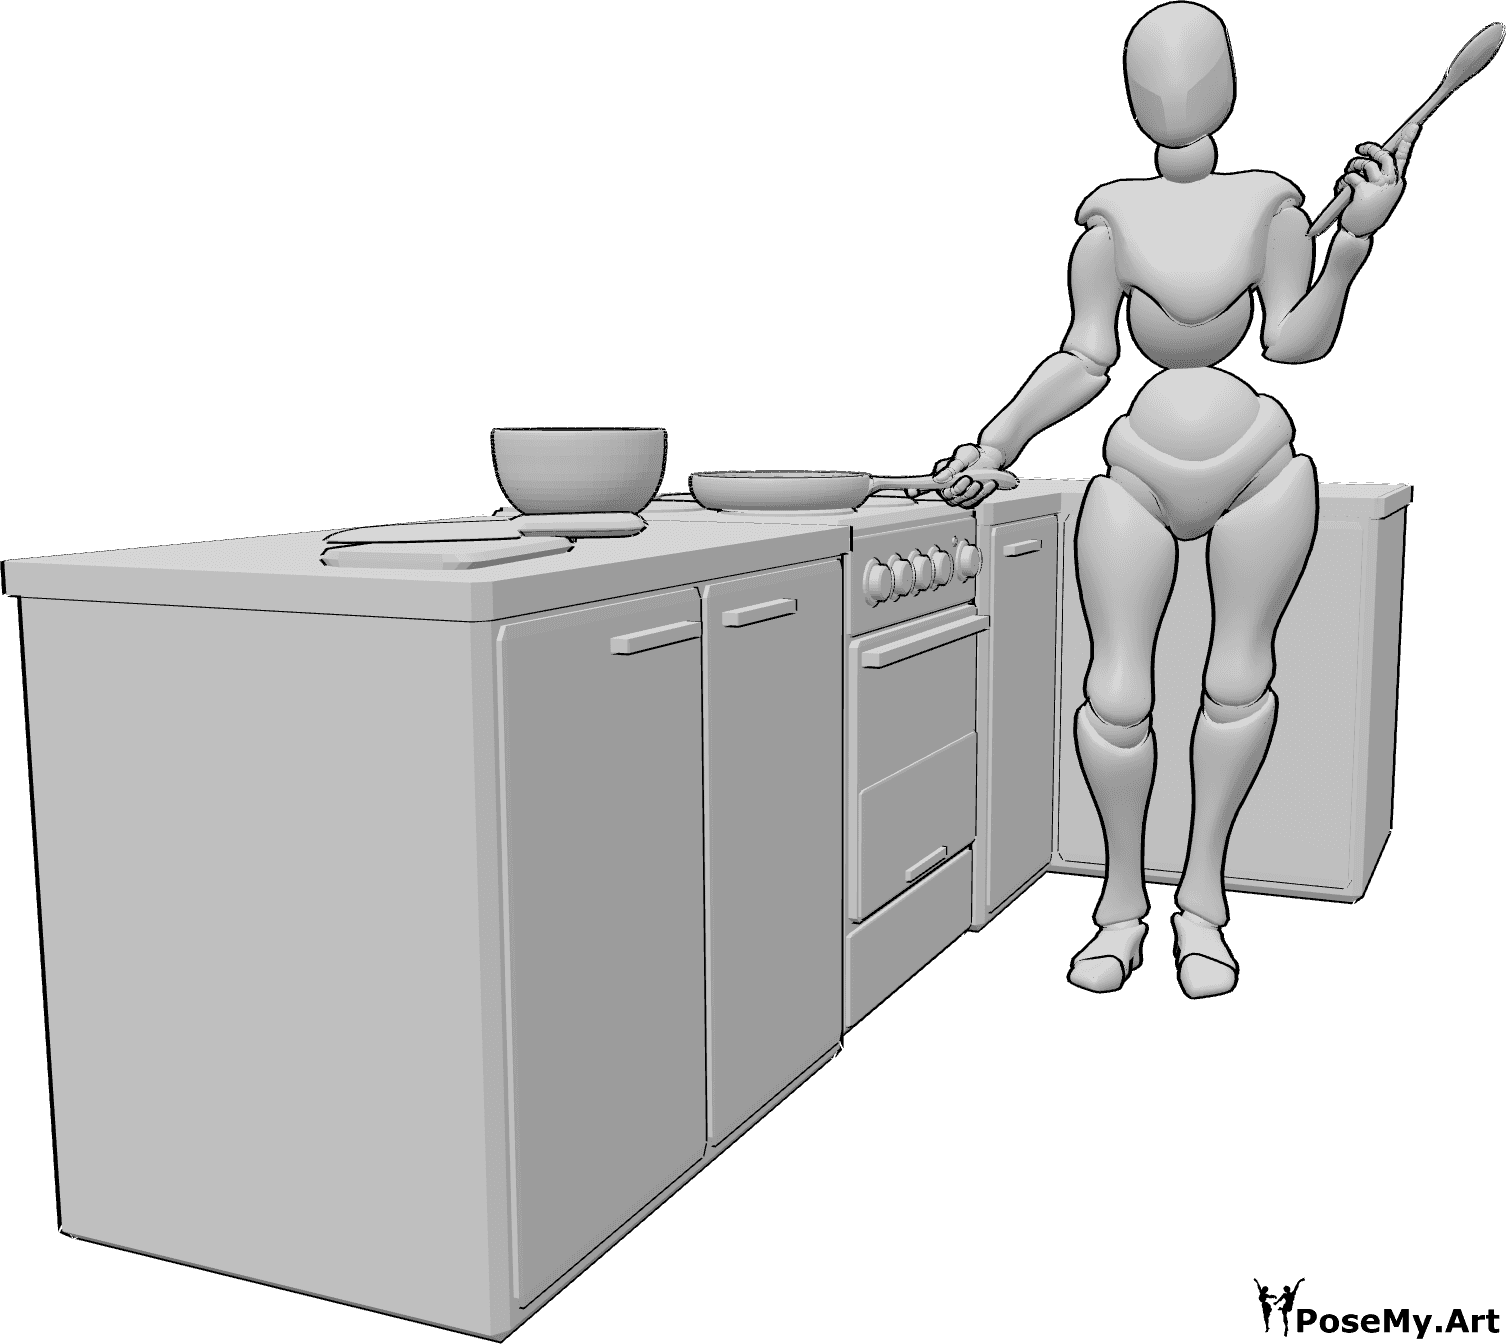 Posen-Referenz- Kochen halten Löffel Pose - Eine Frau steht in der Küche und hält eine Pfanne in der rechten und einen Holzlöffel in der linken Hand.